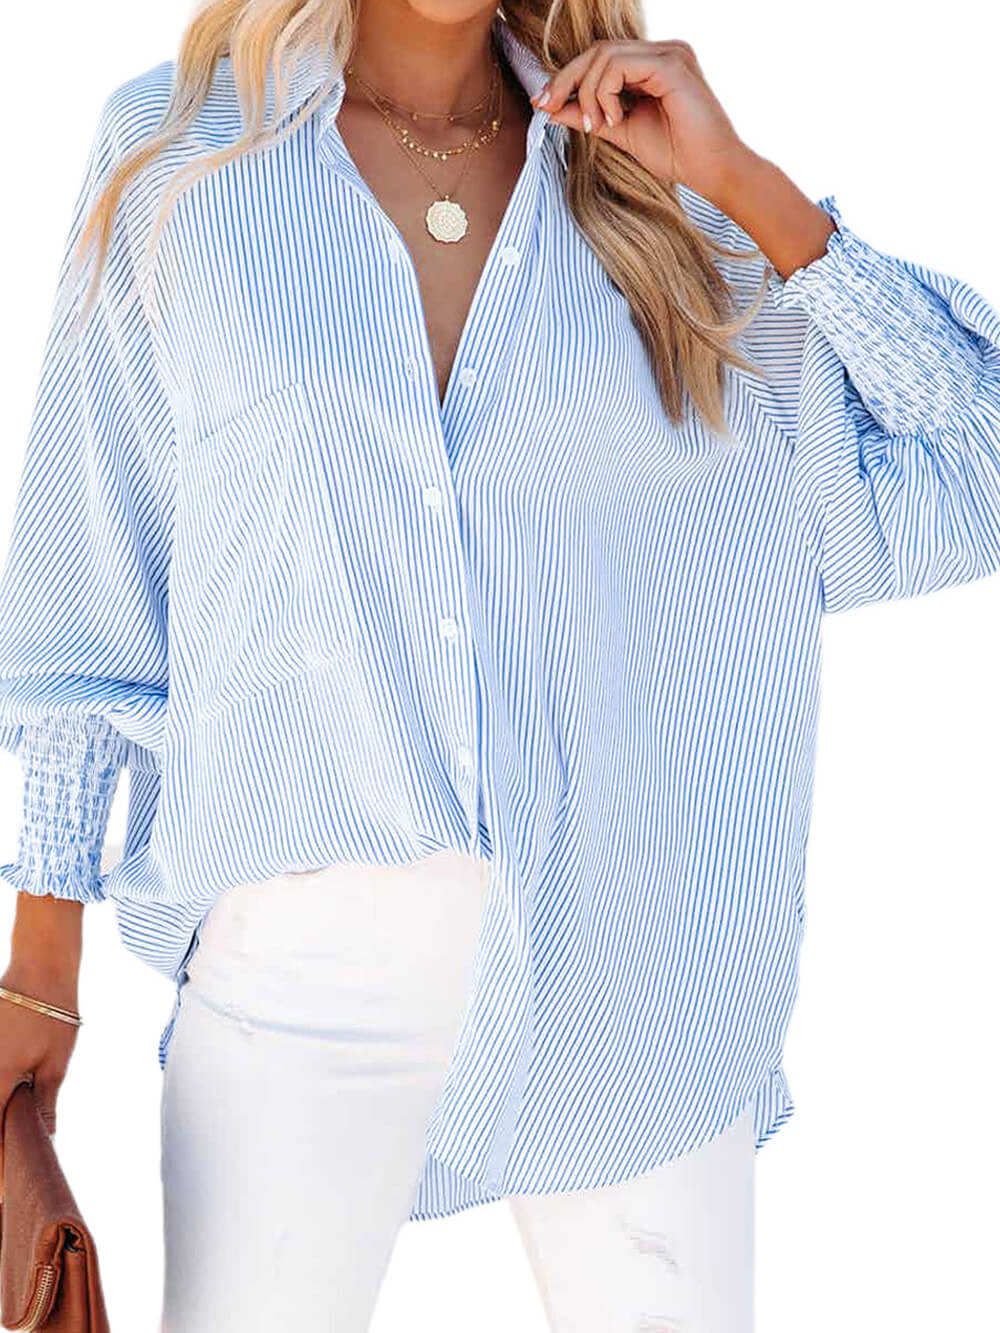 חולצת בויפרנד מפוספסת עם חפת עם כיס כחול שמיים